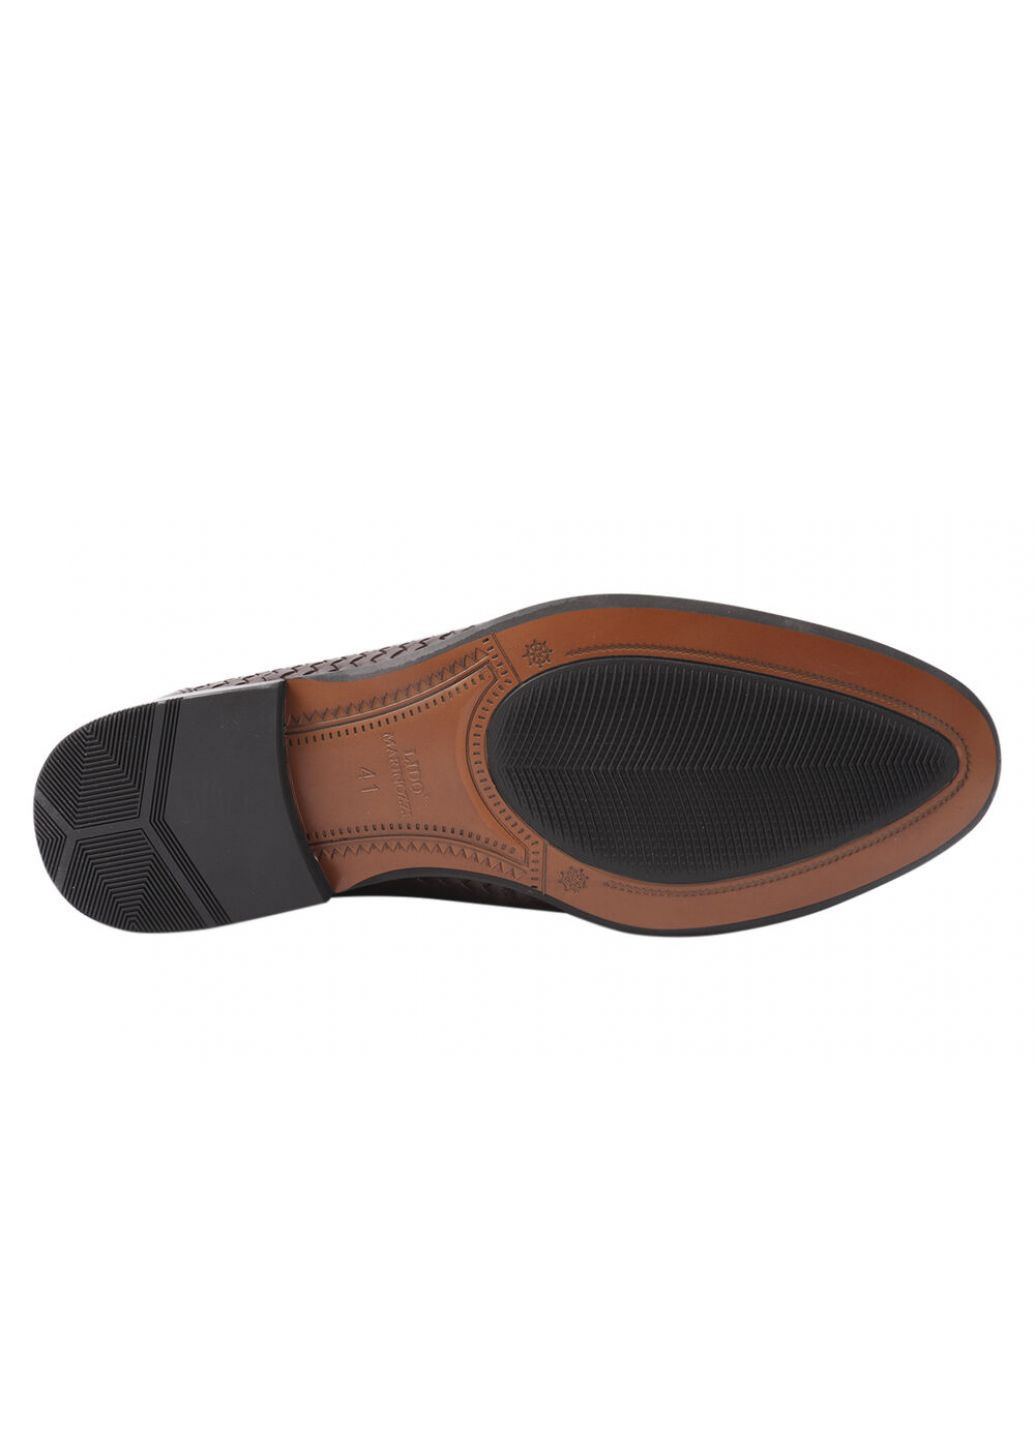 Коричневые туфли мужские из натуральной кожи, на низком ходу, коричневые, lido marinozi Lido Marinozzi